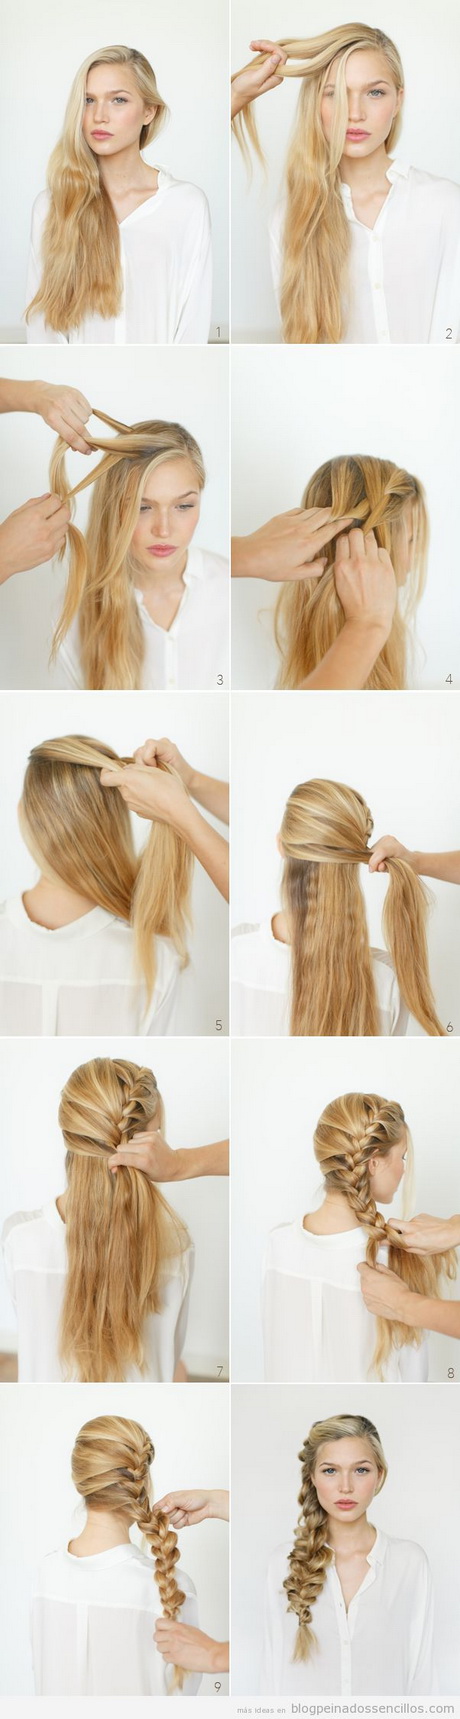 peinados-sencillos-en-pelo-largo-02-13 Peinados sencillos en pelo largo